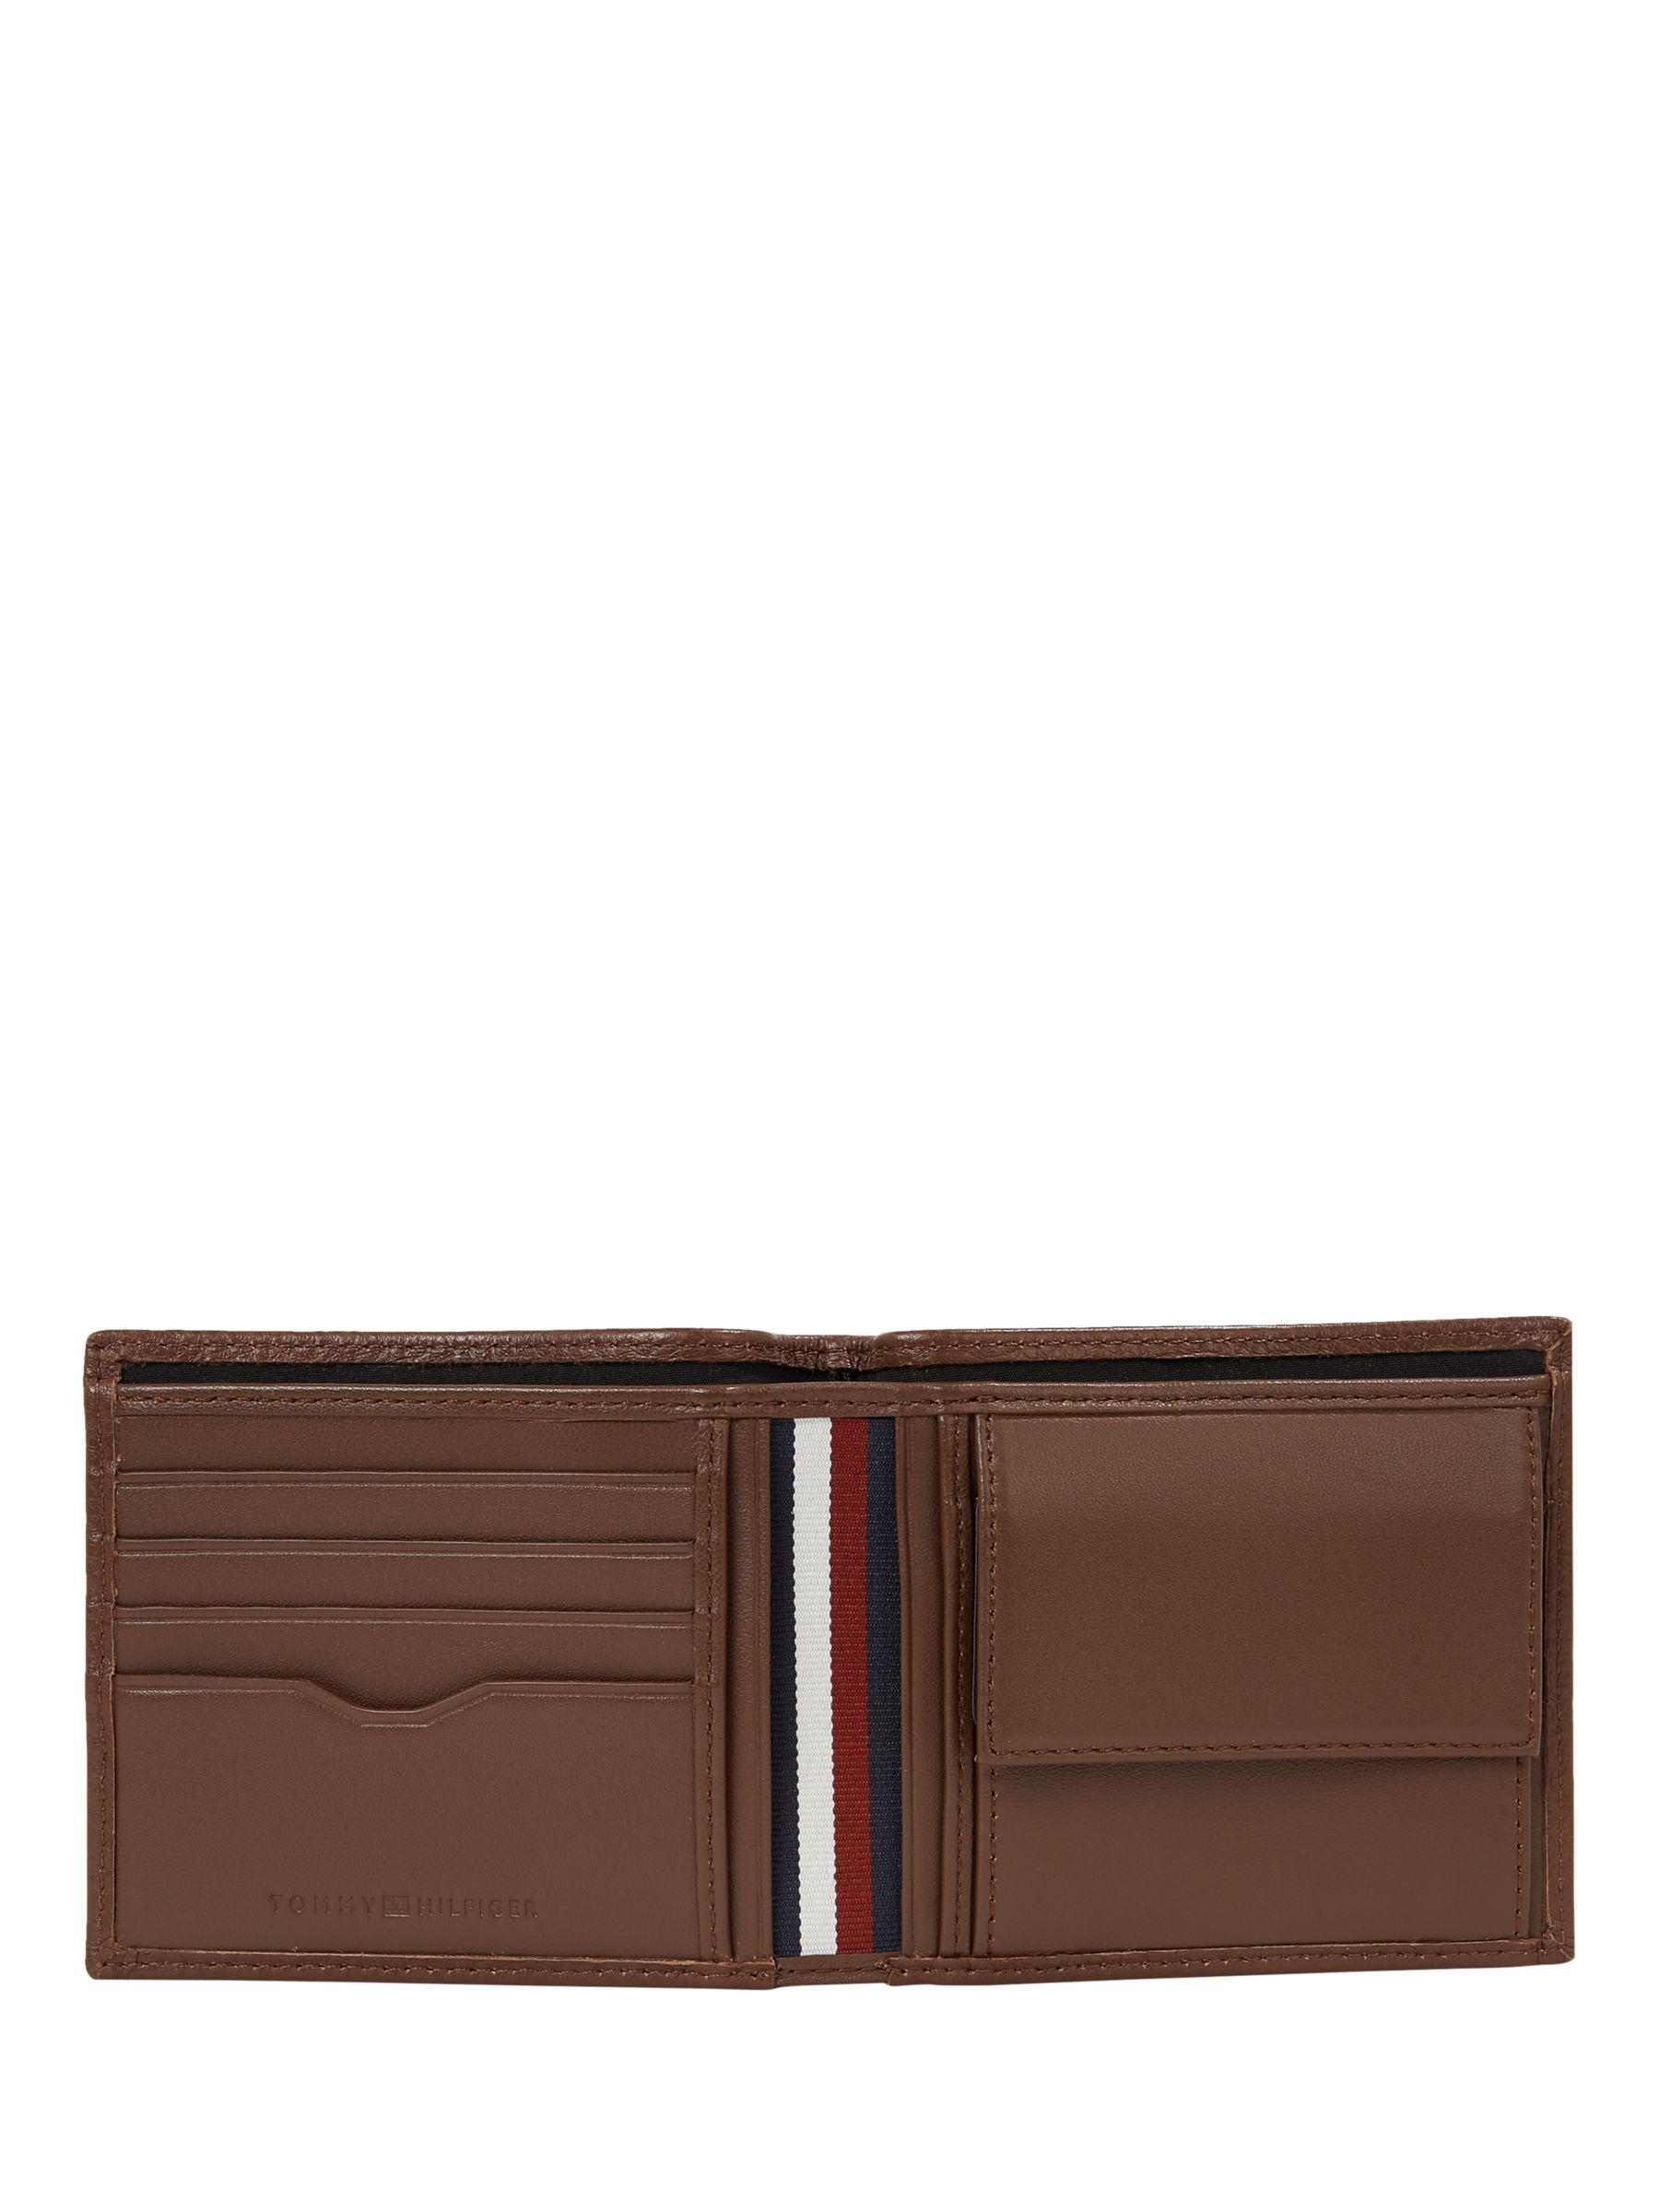 Buy Tommy Hilfiger Central Leather Wallet, Dark Chestnut Online at johnlewis.com